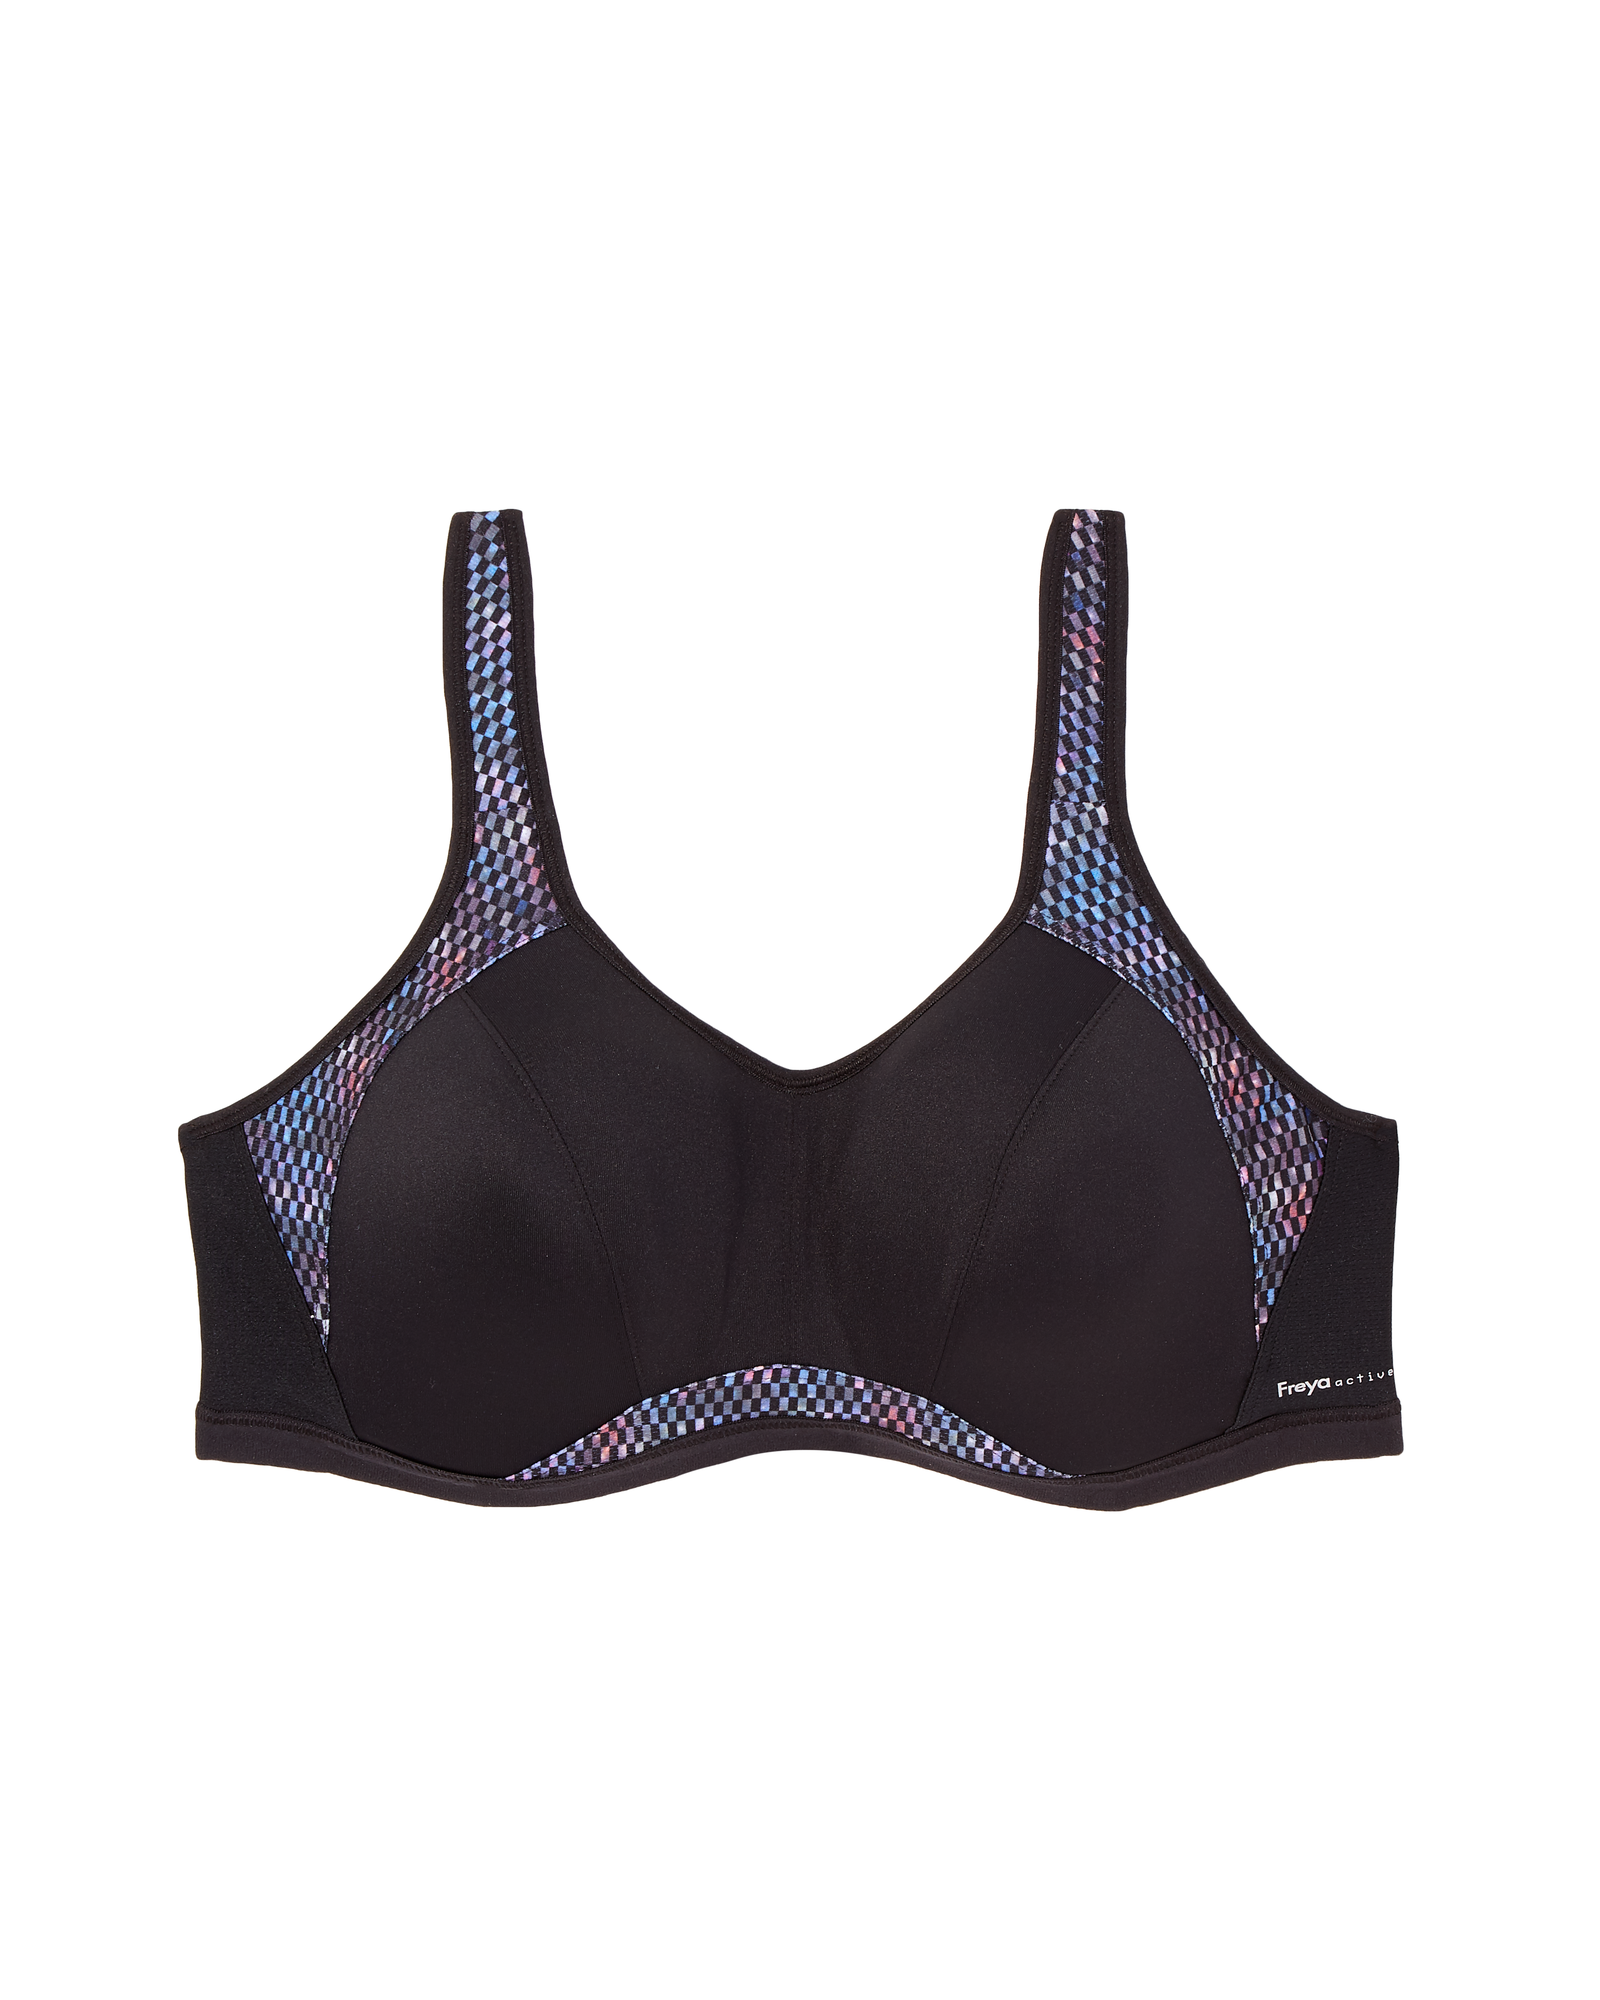 Freya Sparks Underwire Sports Bra - Black / Royal Blue, Size 40DD (40DD), Dia&Co